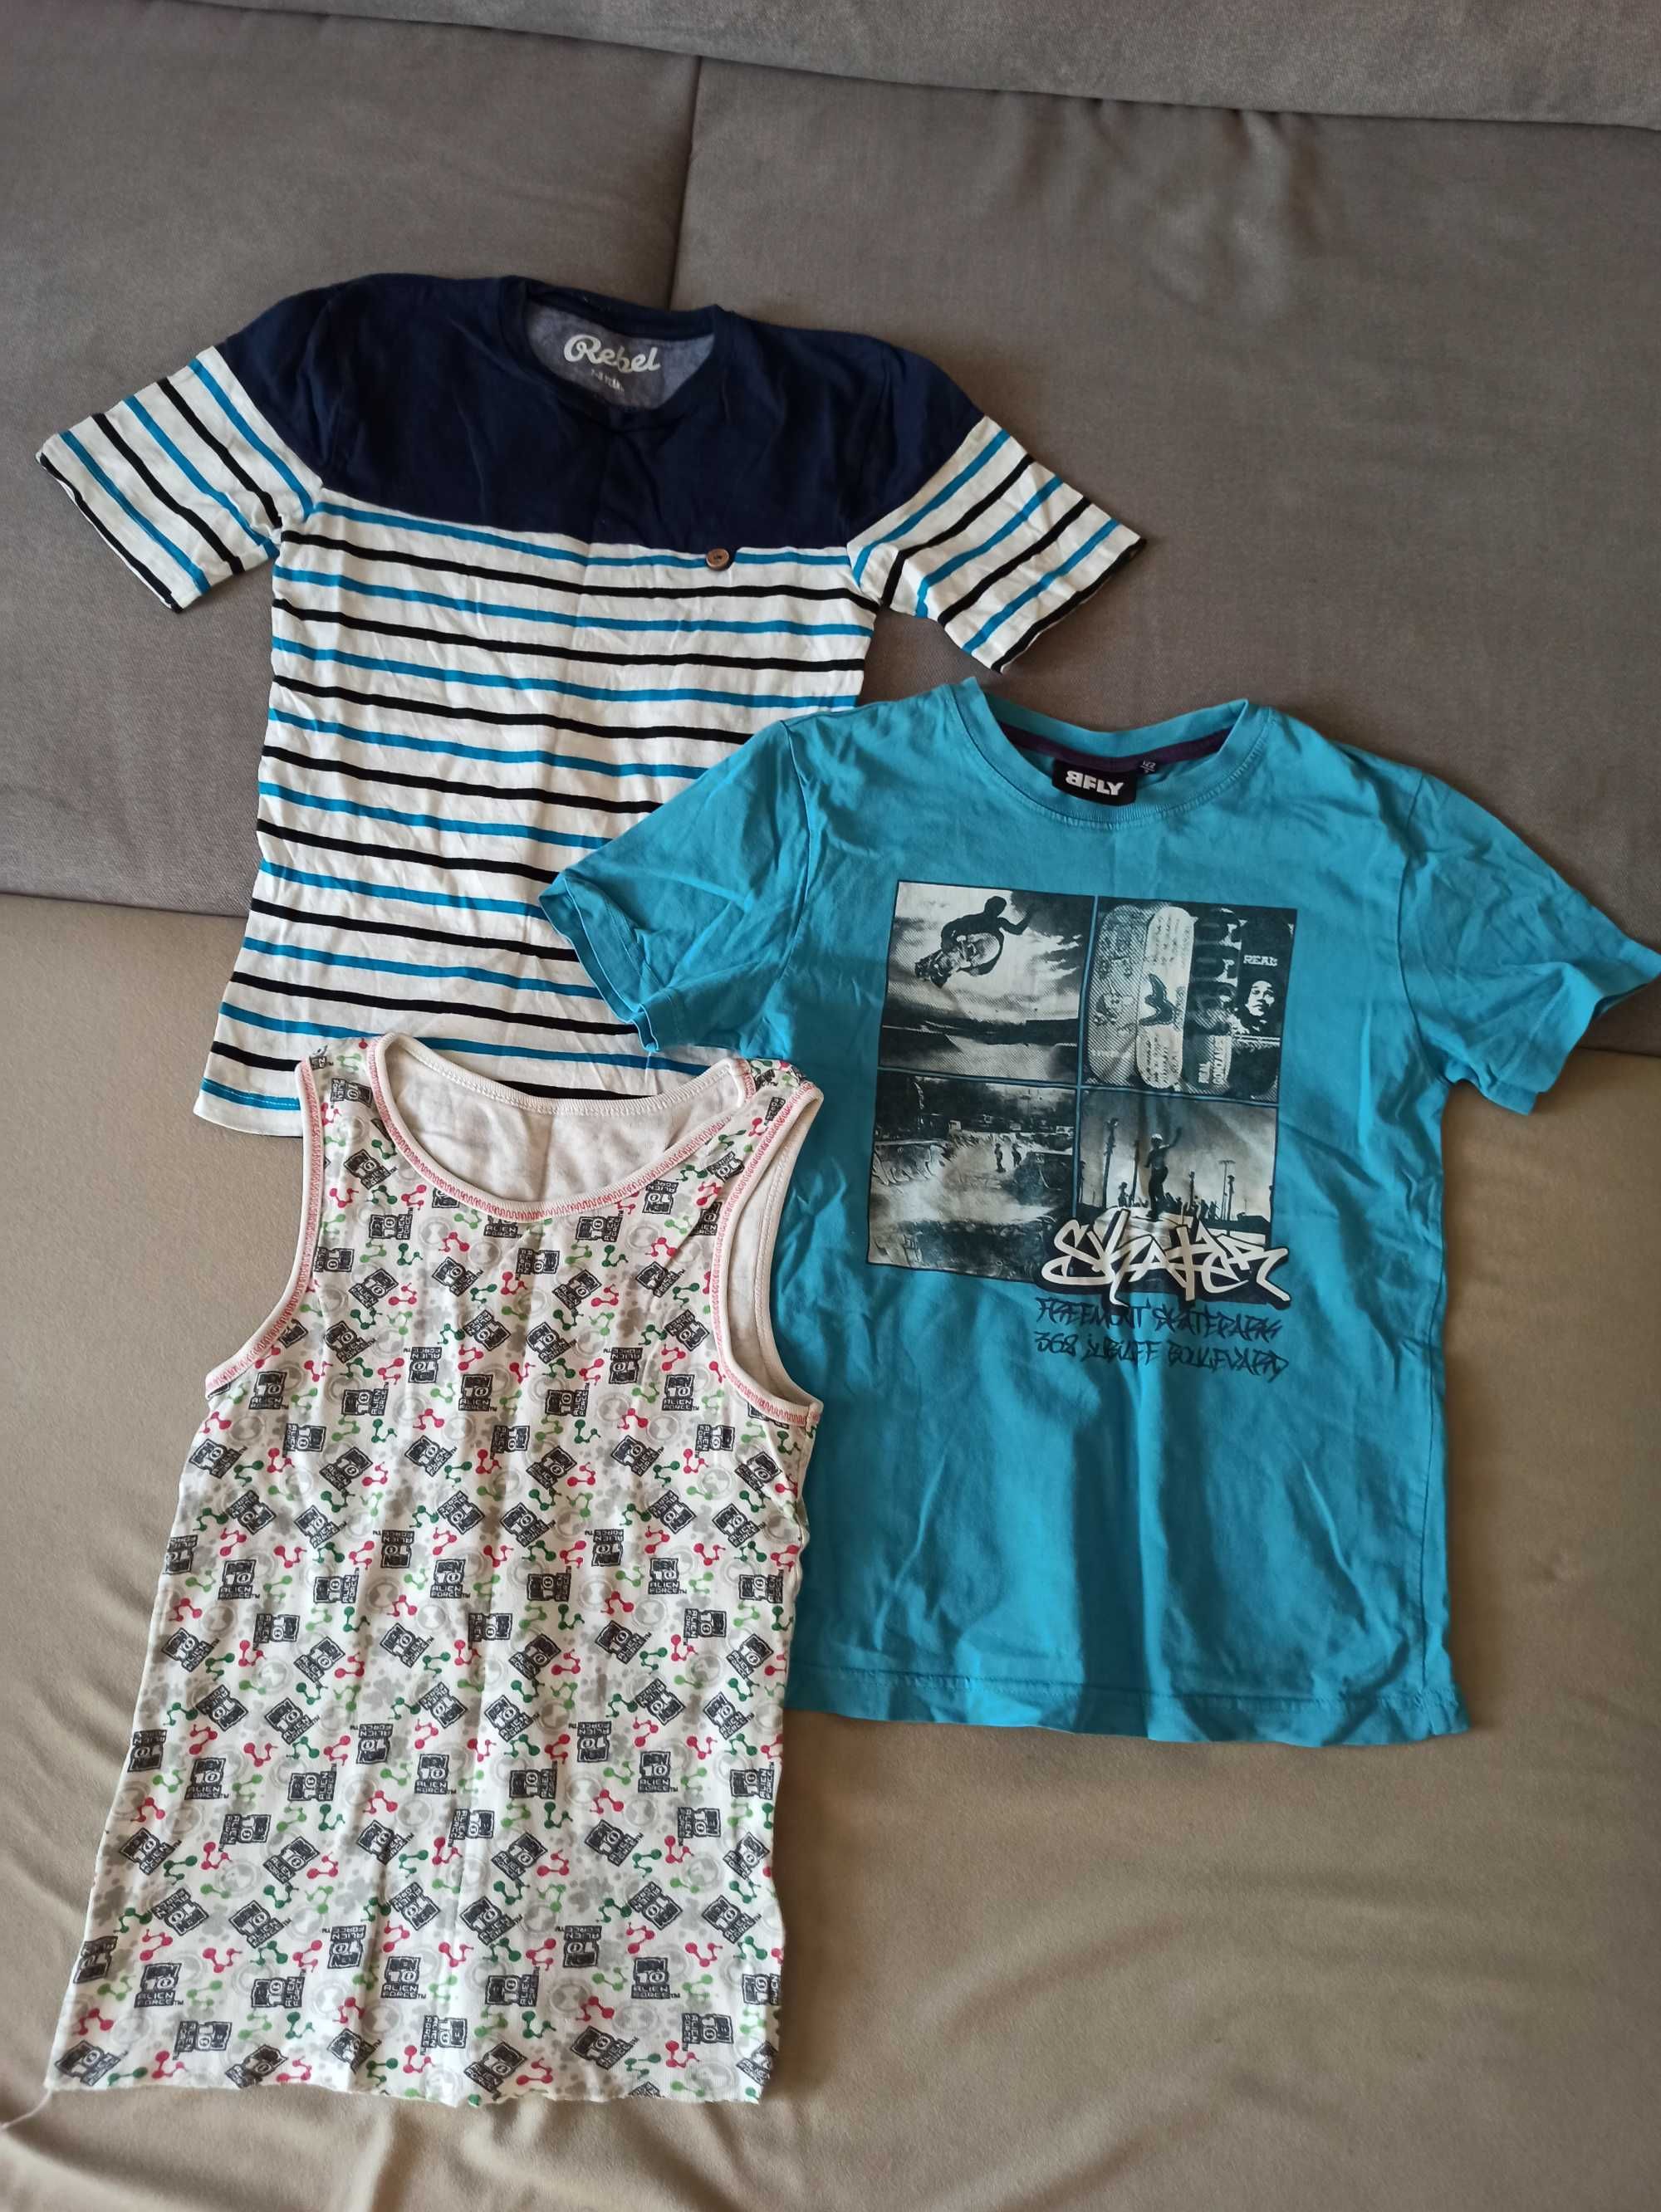 Ubrania chłopiec - koszulki, spodenki i spodnie, bluzy 122-128